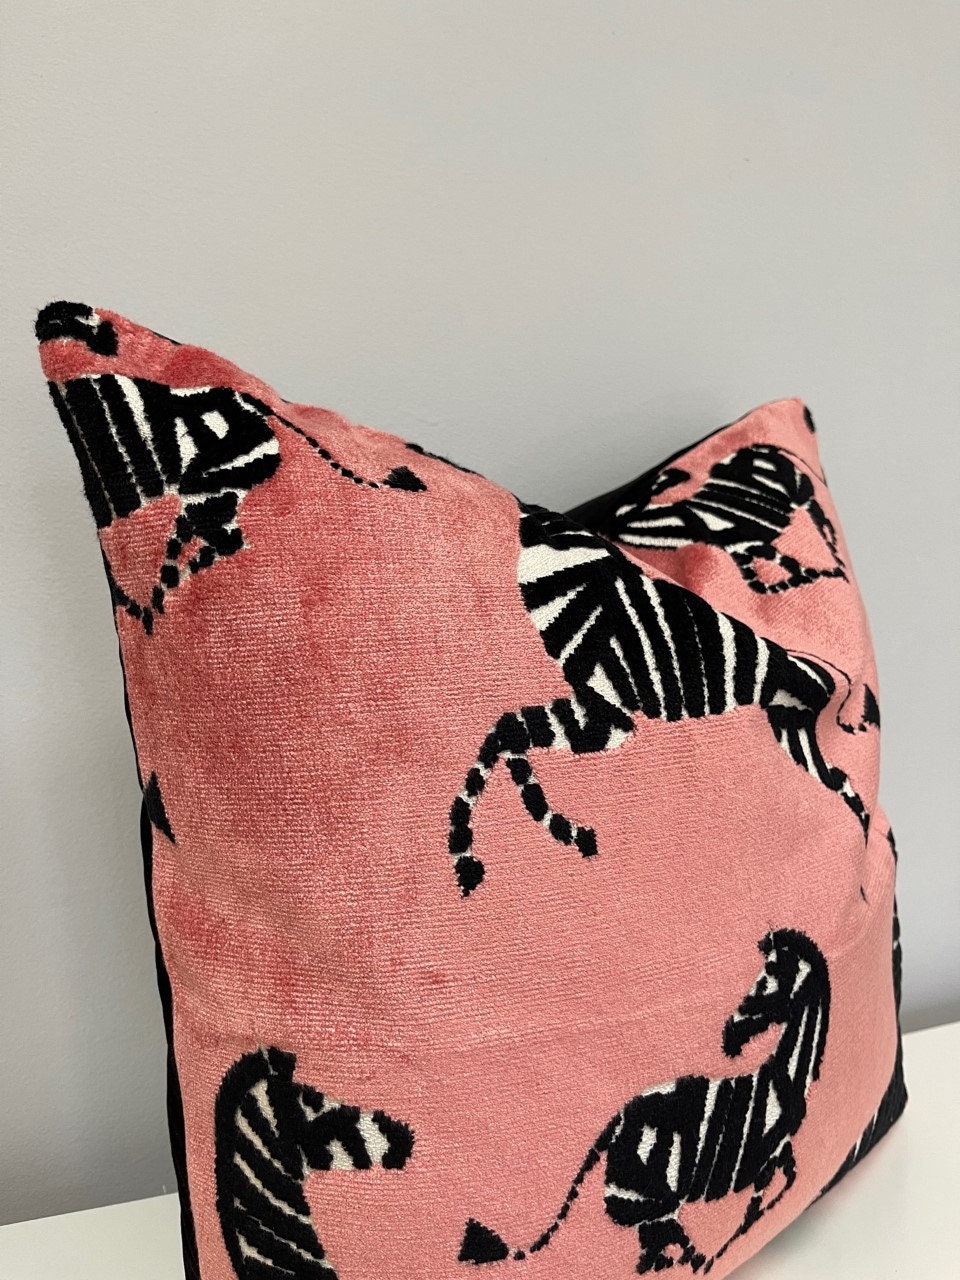 Pink Zebra Pillow 